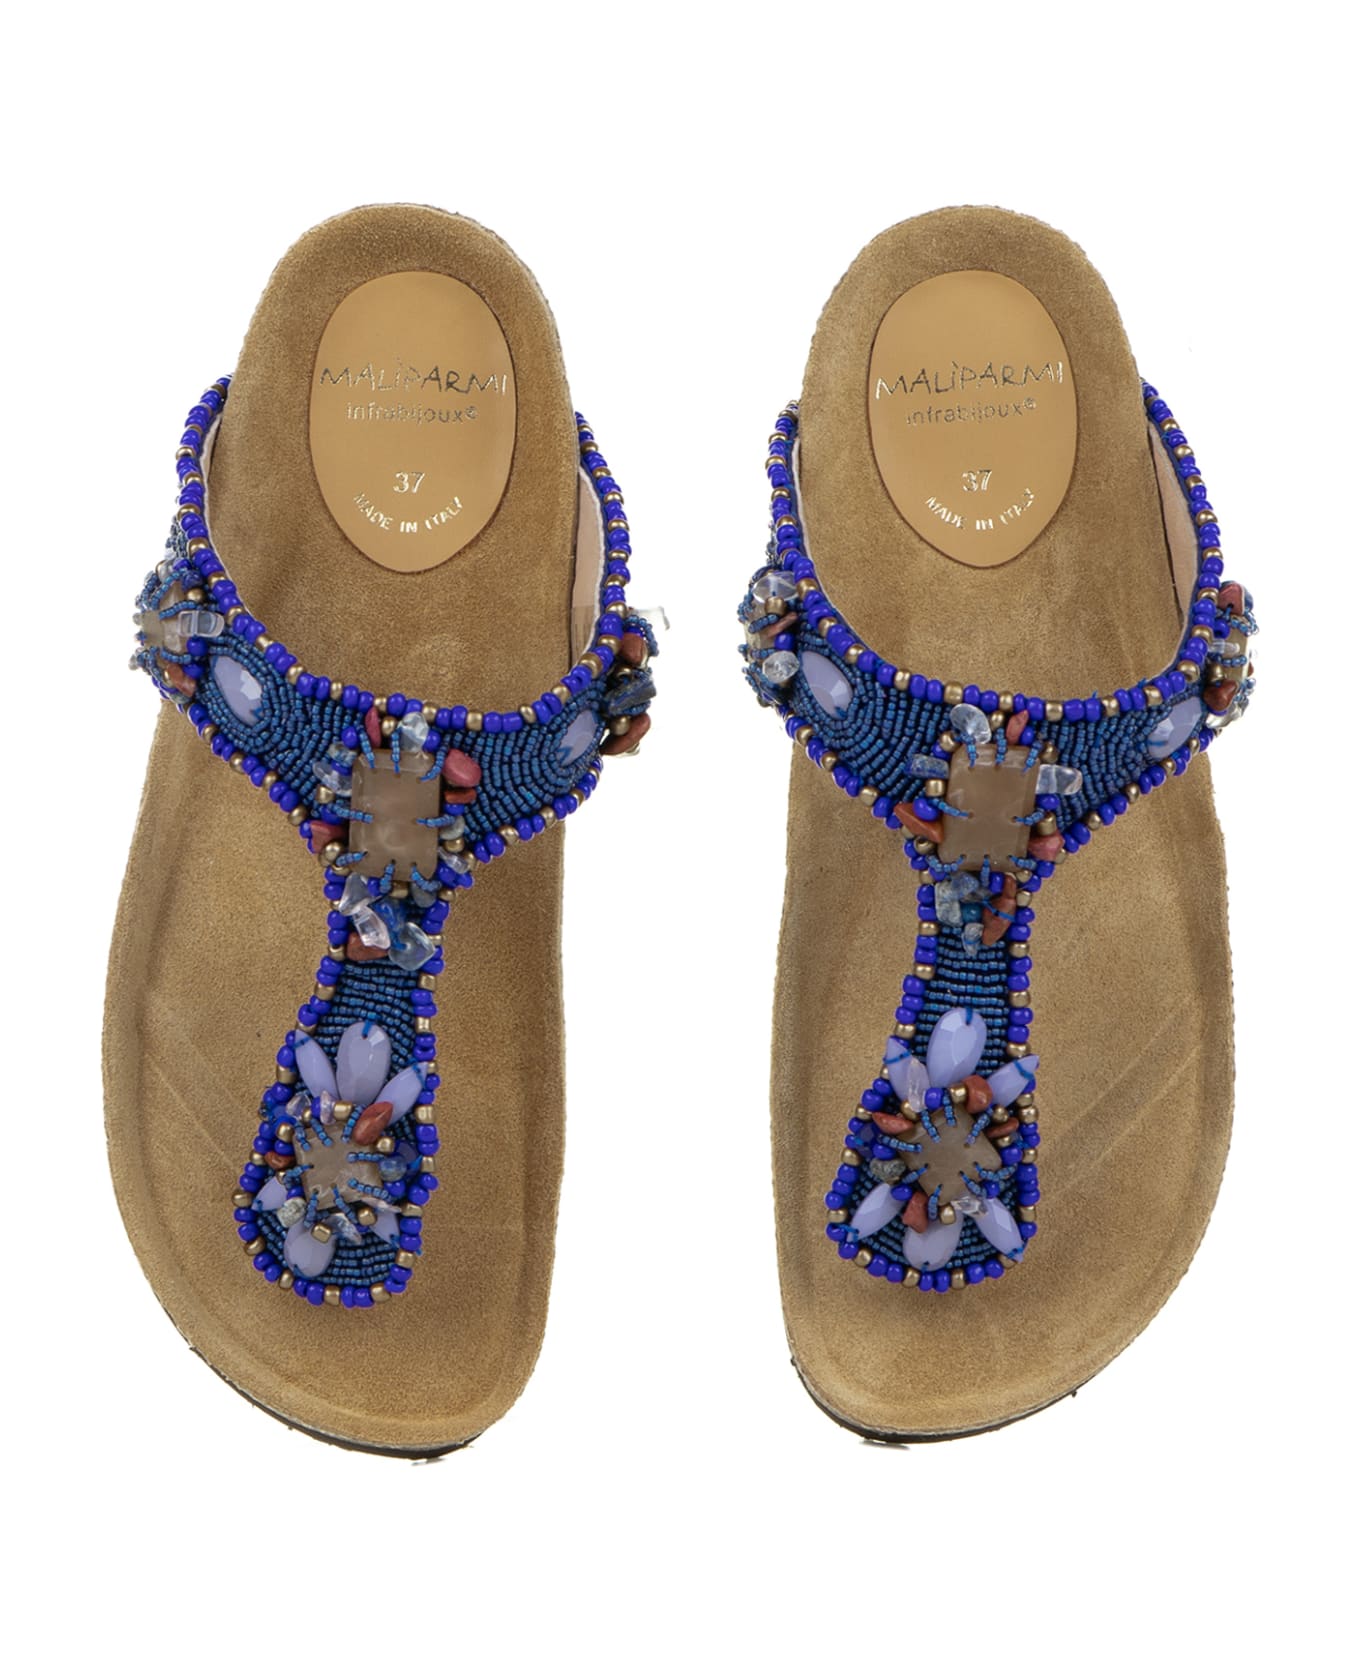 Malìparmi Flip-flops With Jewelery Embroidery On Beads - BLU/BEIGE サンダル